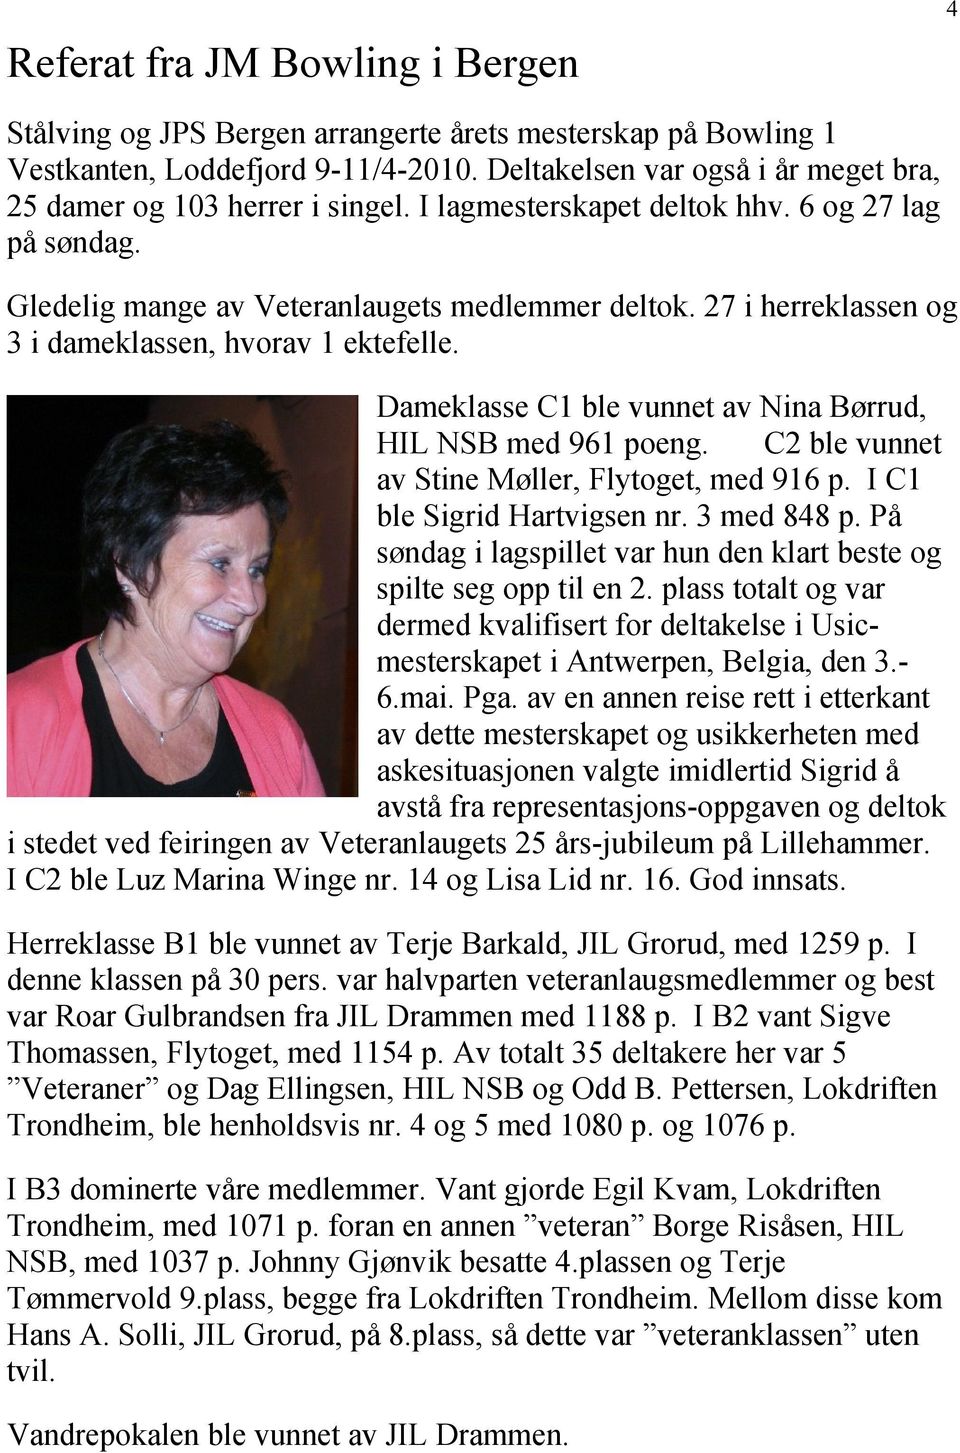 27 i herreklassen og 3 i dameklassen, hvorav 1 ektefelle. Dameklasse C1 ble vunnet av Nina Børrud, HIL NSB med 961 poeng. C2 ble vunnet av Stine Møller, Flytoget, med 916 p.